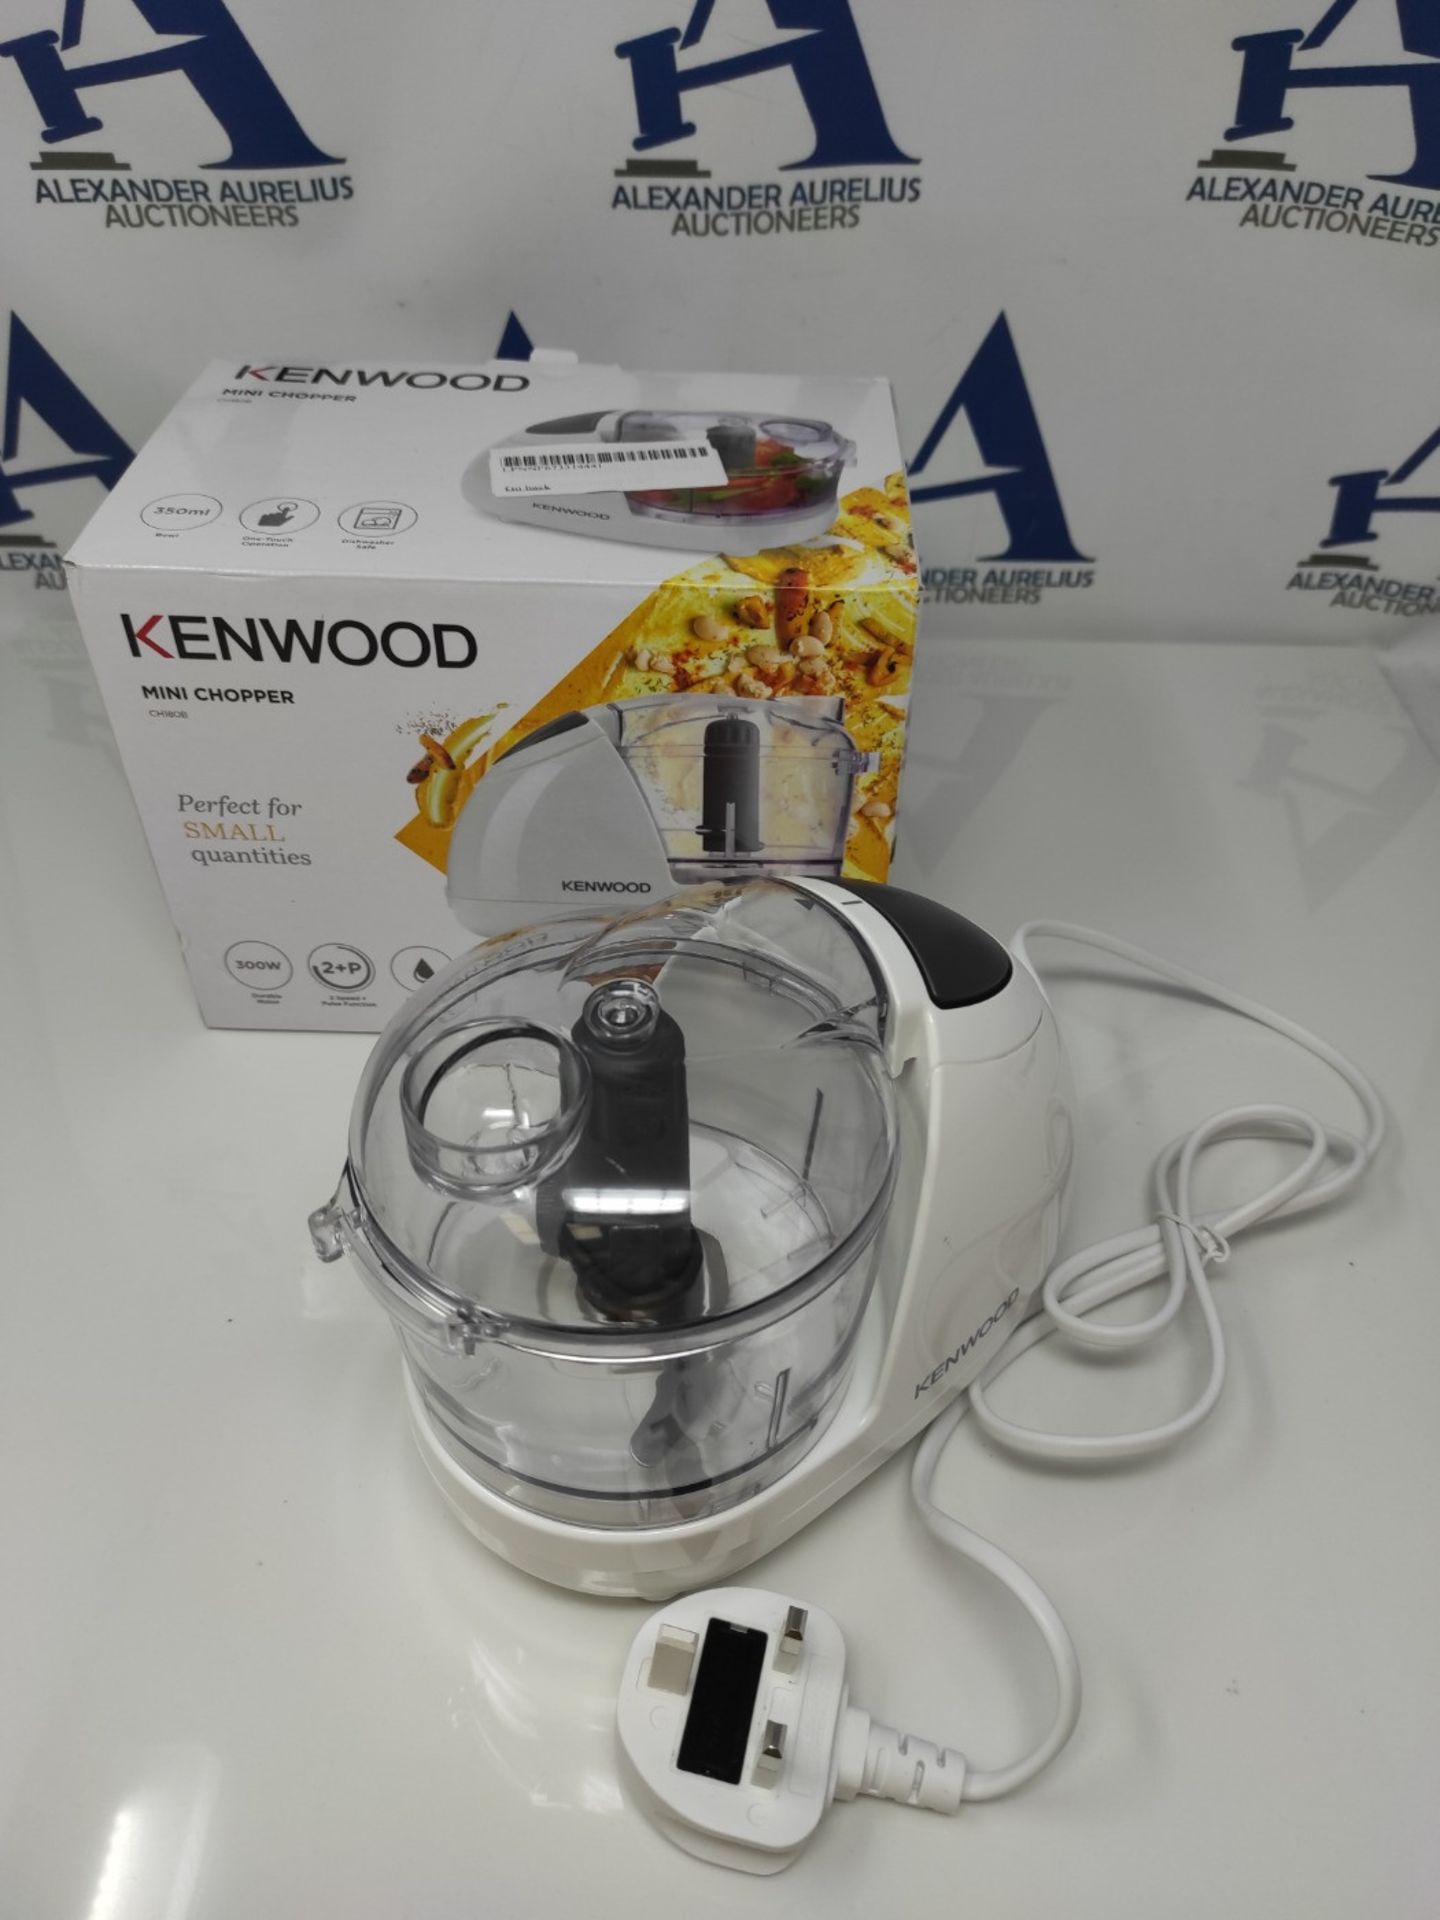 Kenwood Mini Chopper, 0.35 Litre Dishwasher Safe Bowl, 2 Speeds, Rubber Feet for Food - Image 2 of 2